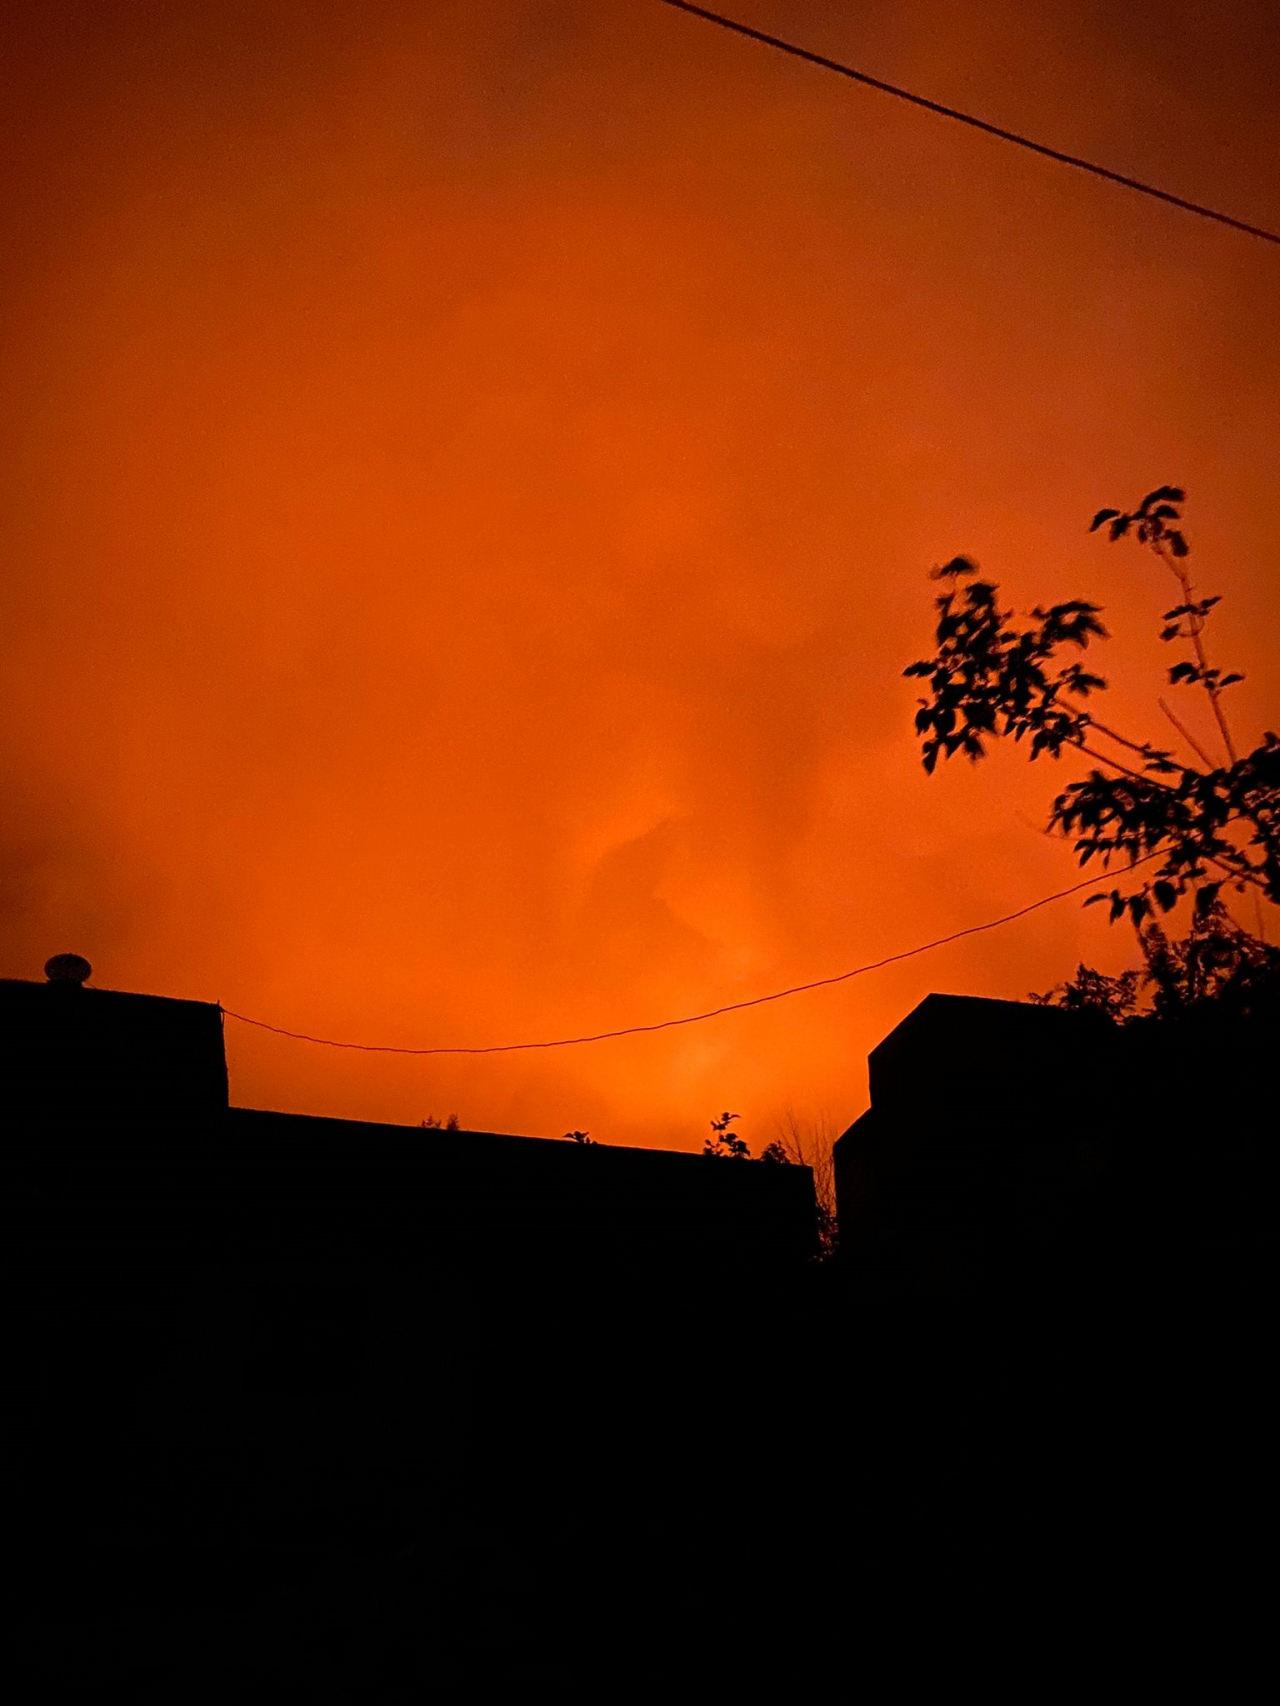 Diyarbakır'da yangın: Amca-yeğenin yürek burkan ölümü